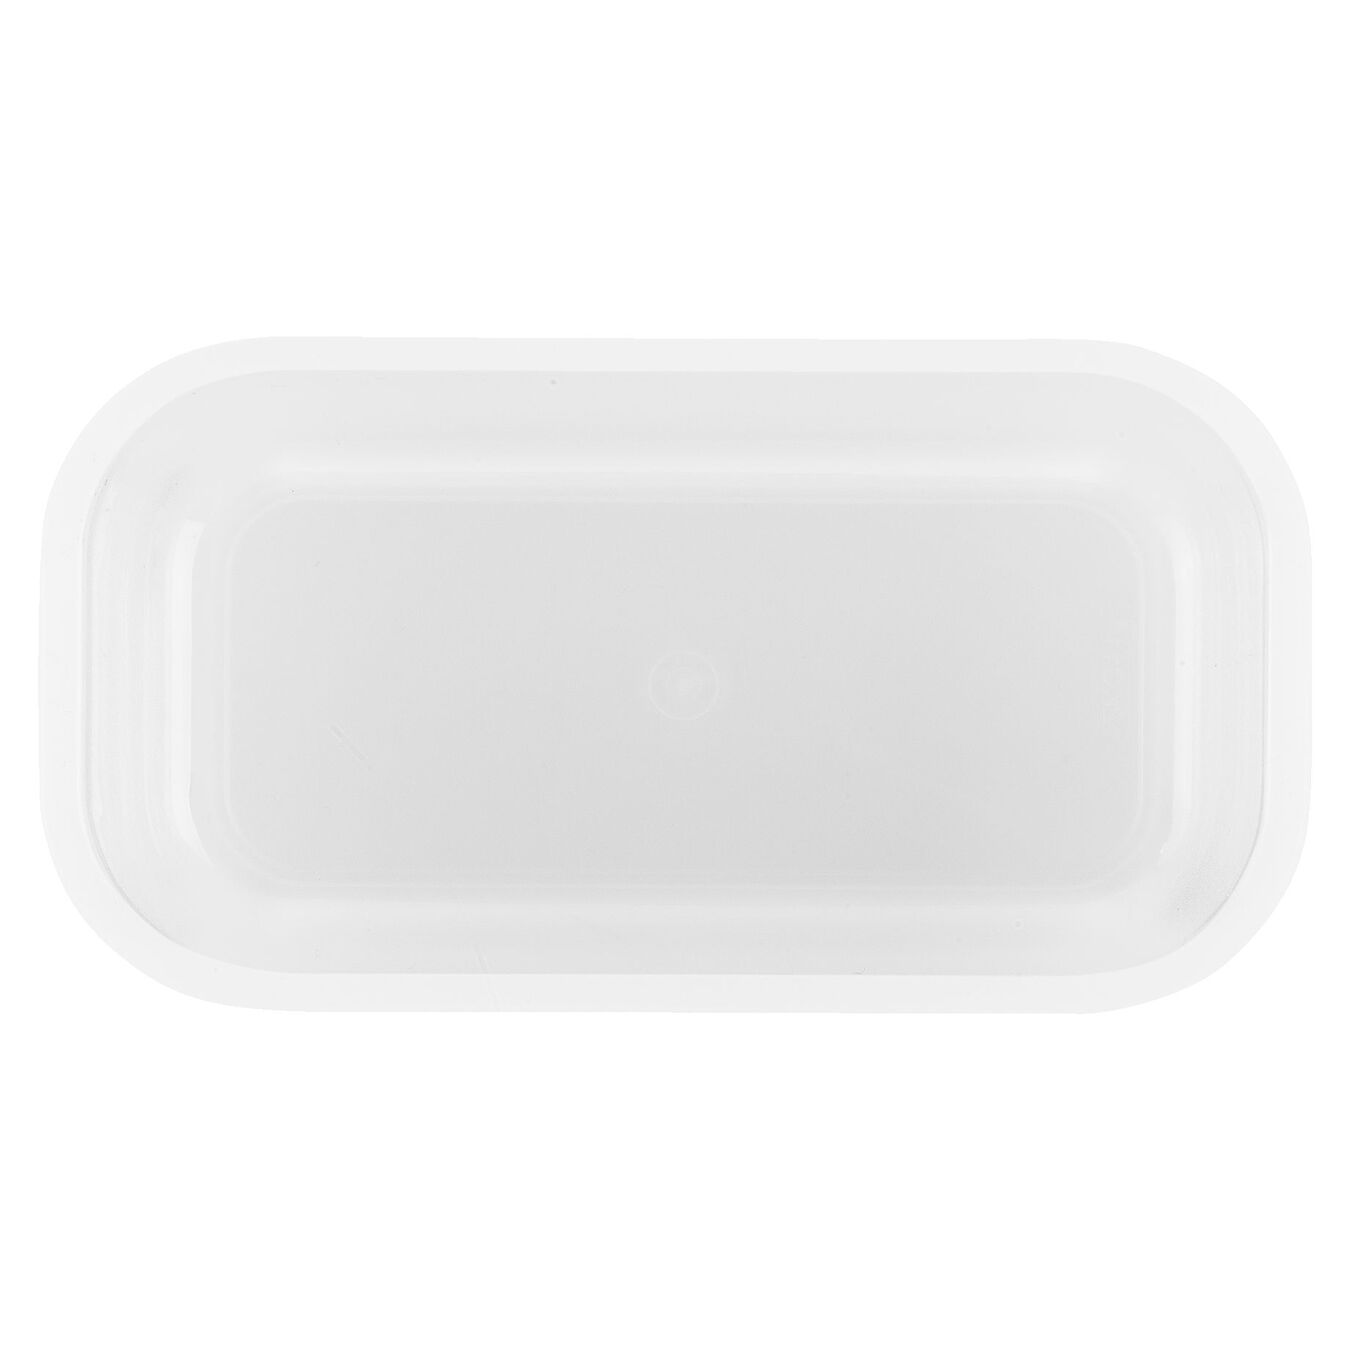 Lunch box S, Plastique, semi transparent-Gris,,large 4